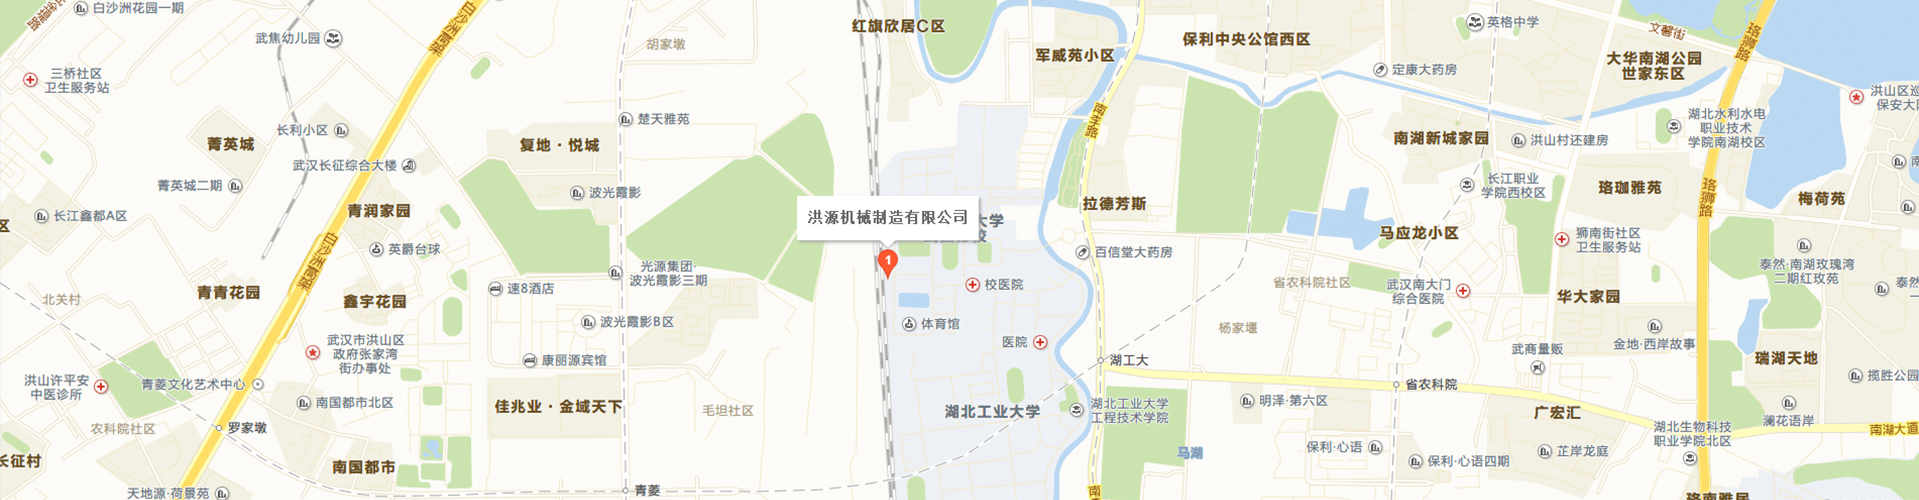 篮球比赛下注平台(中国)有限公司厂家地图